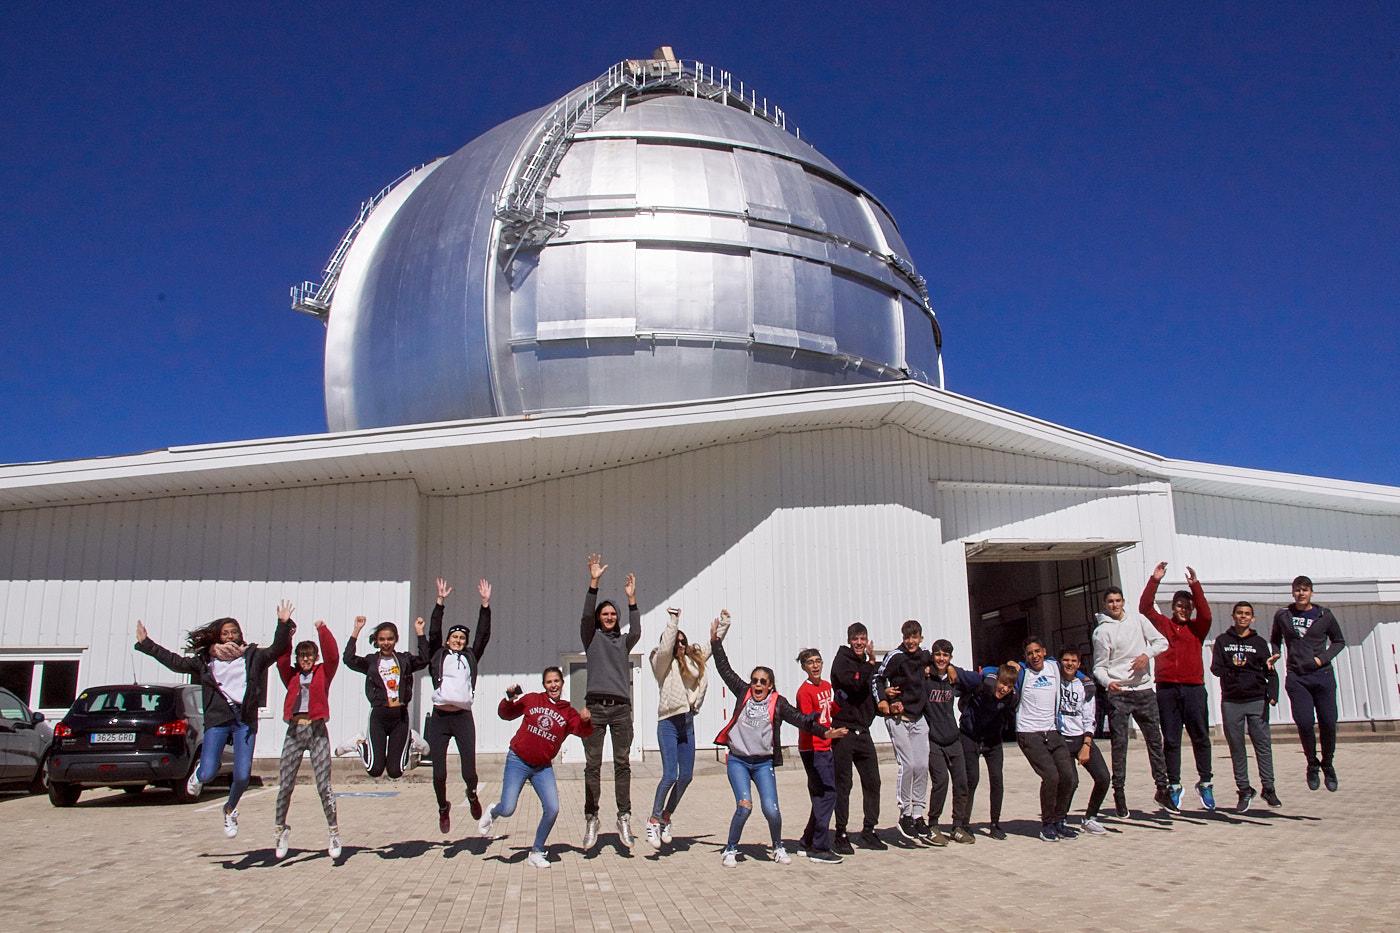 Students of the Colegio Santo Domingo de Guzmán during the visit to the Gran Telescopio Canarias (GTC) of the programme "Nuestros Alumnos y el ORM" (Our Students and the ORM)